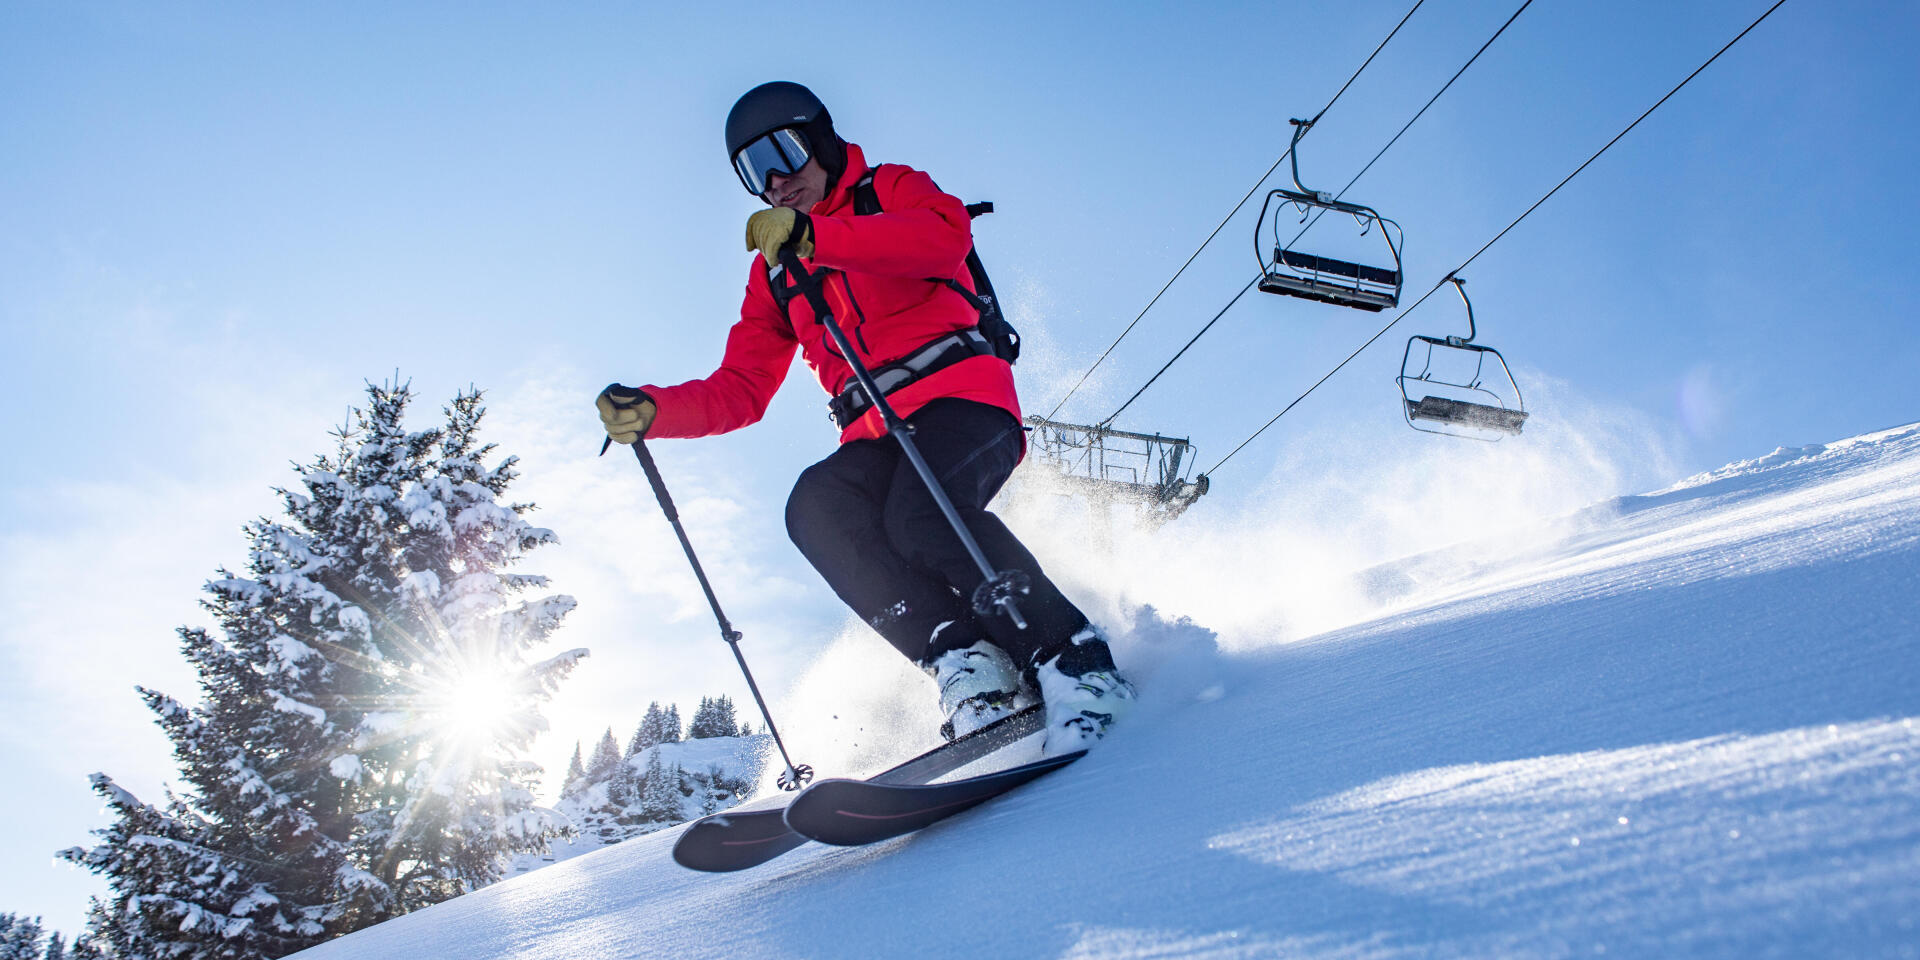 Comment faire l'entretien des skis alpins sans fartage ?